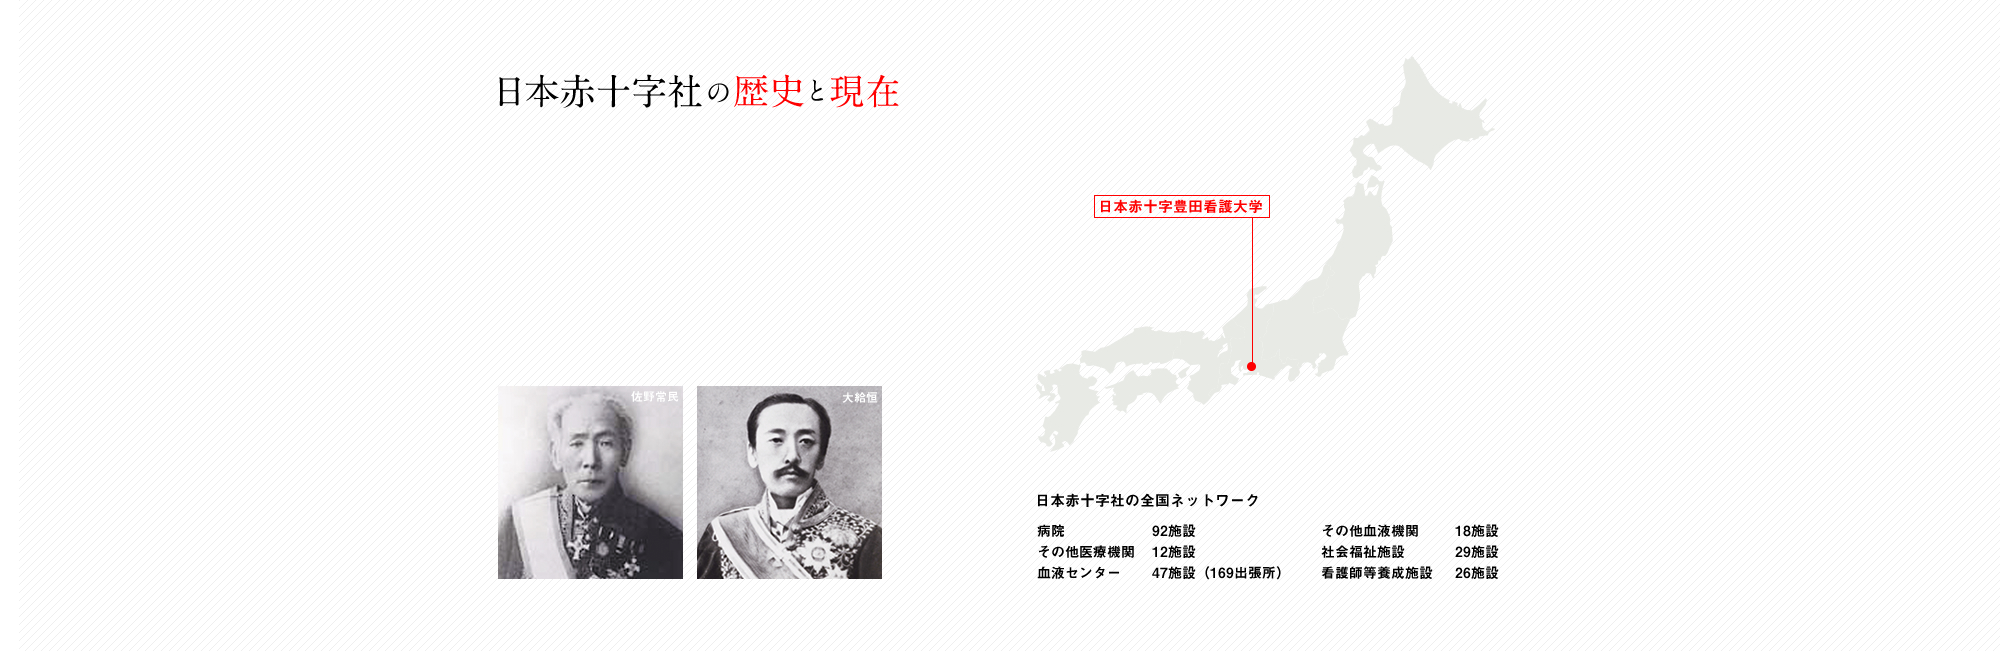 日本赤十字社の歴史と現在